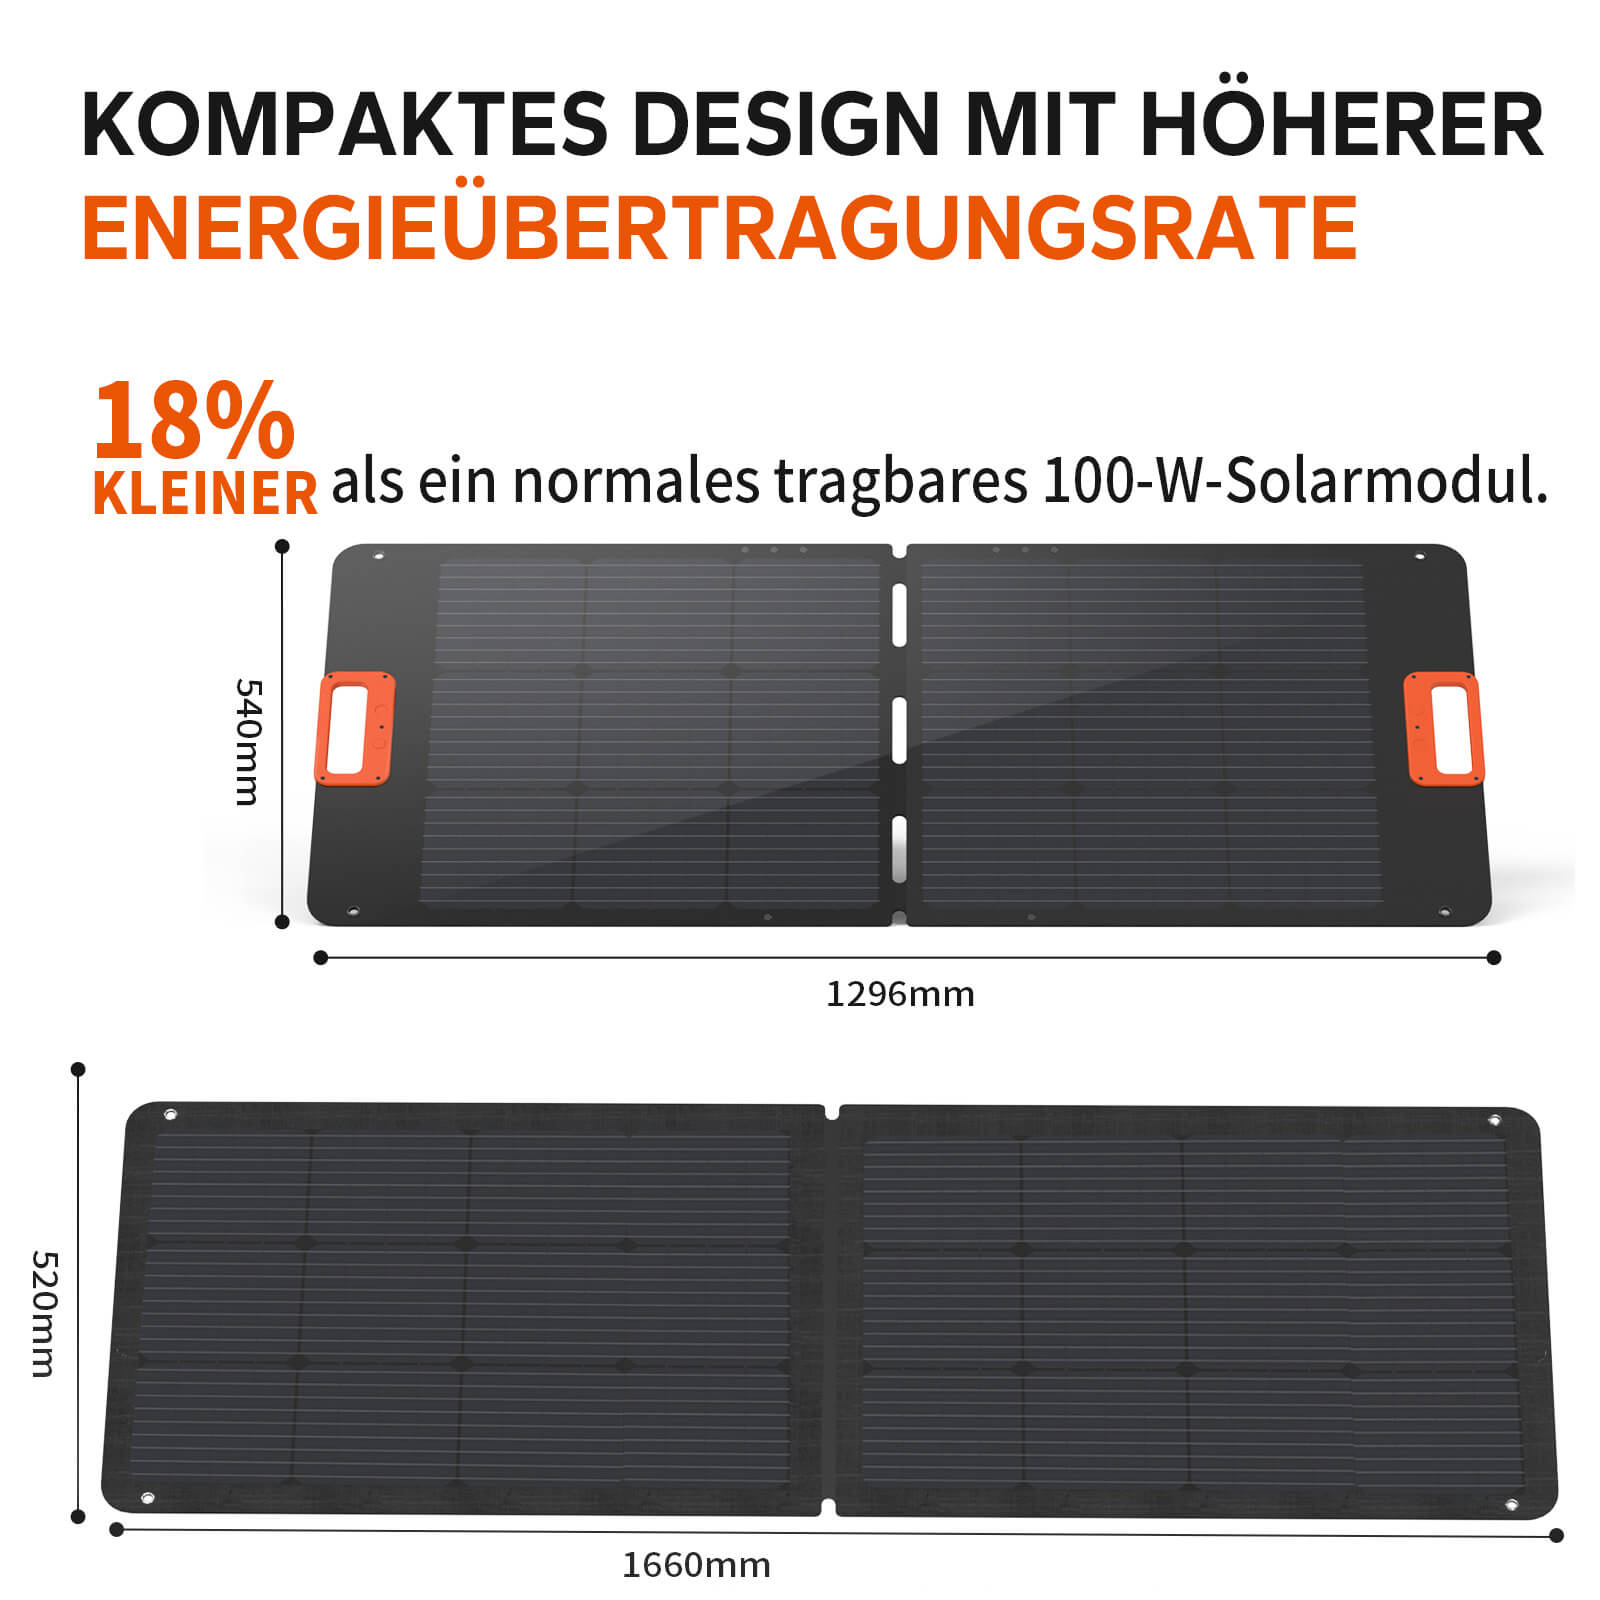 Das LiTime Portable 100W Solarpanel mit monokristallinen Silizium-Solarzellen bietet eine hohe Energieübertragungsrate von 22,7%, während die durchschnittliche Übertragungsrate in der Branche 21% beträgt.